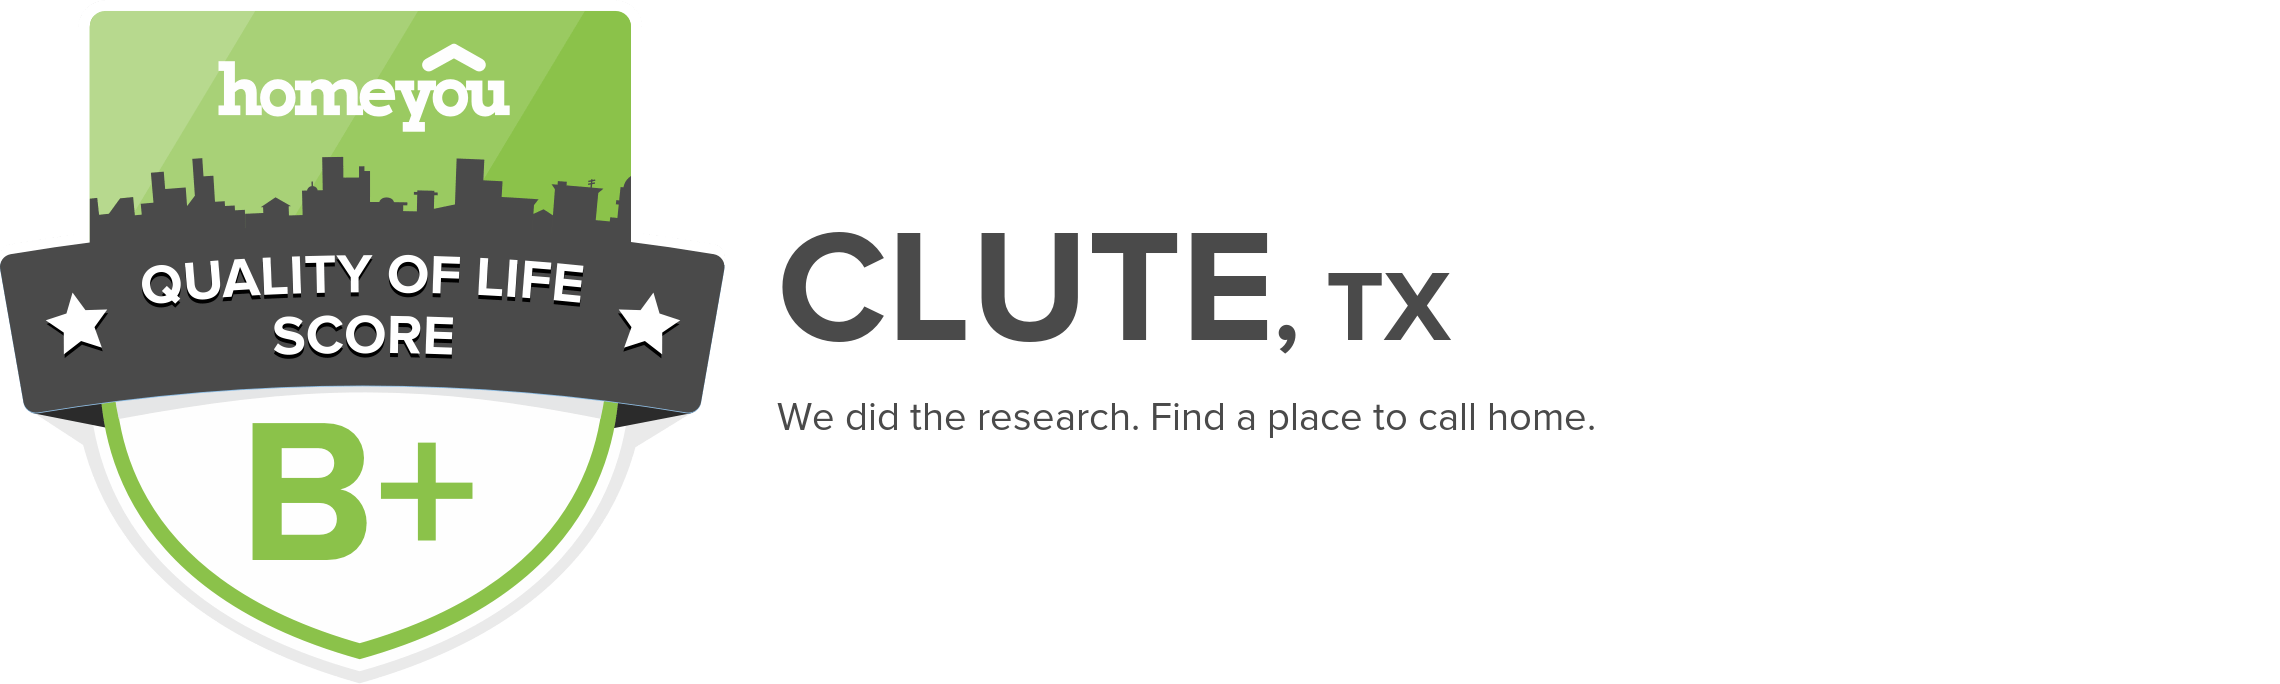 Clute, TX